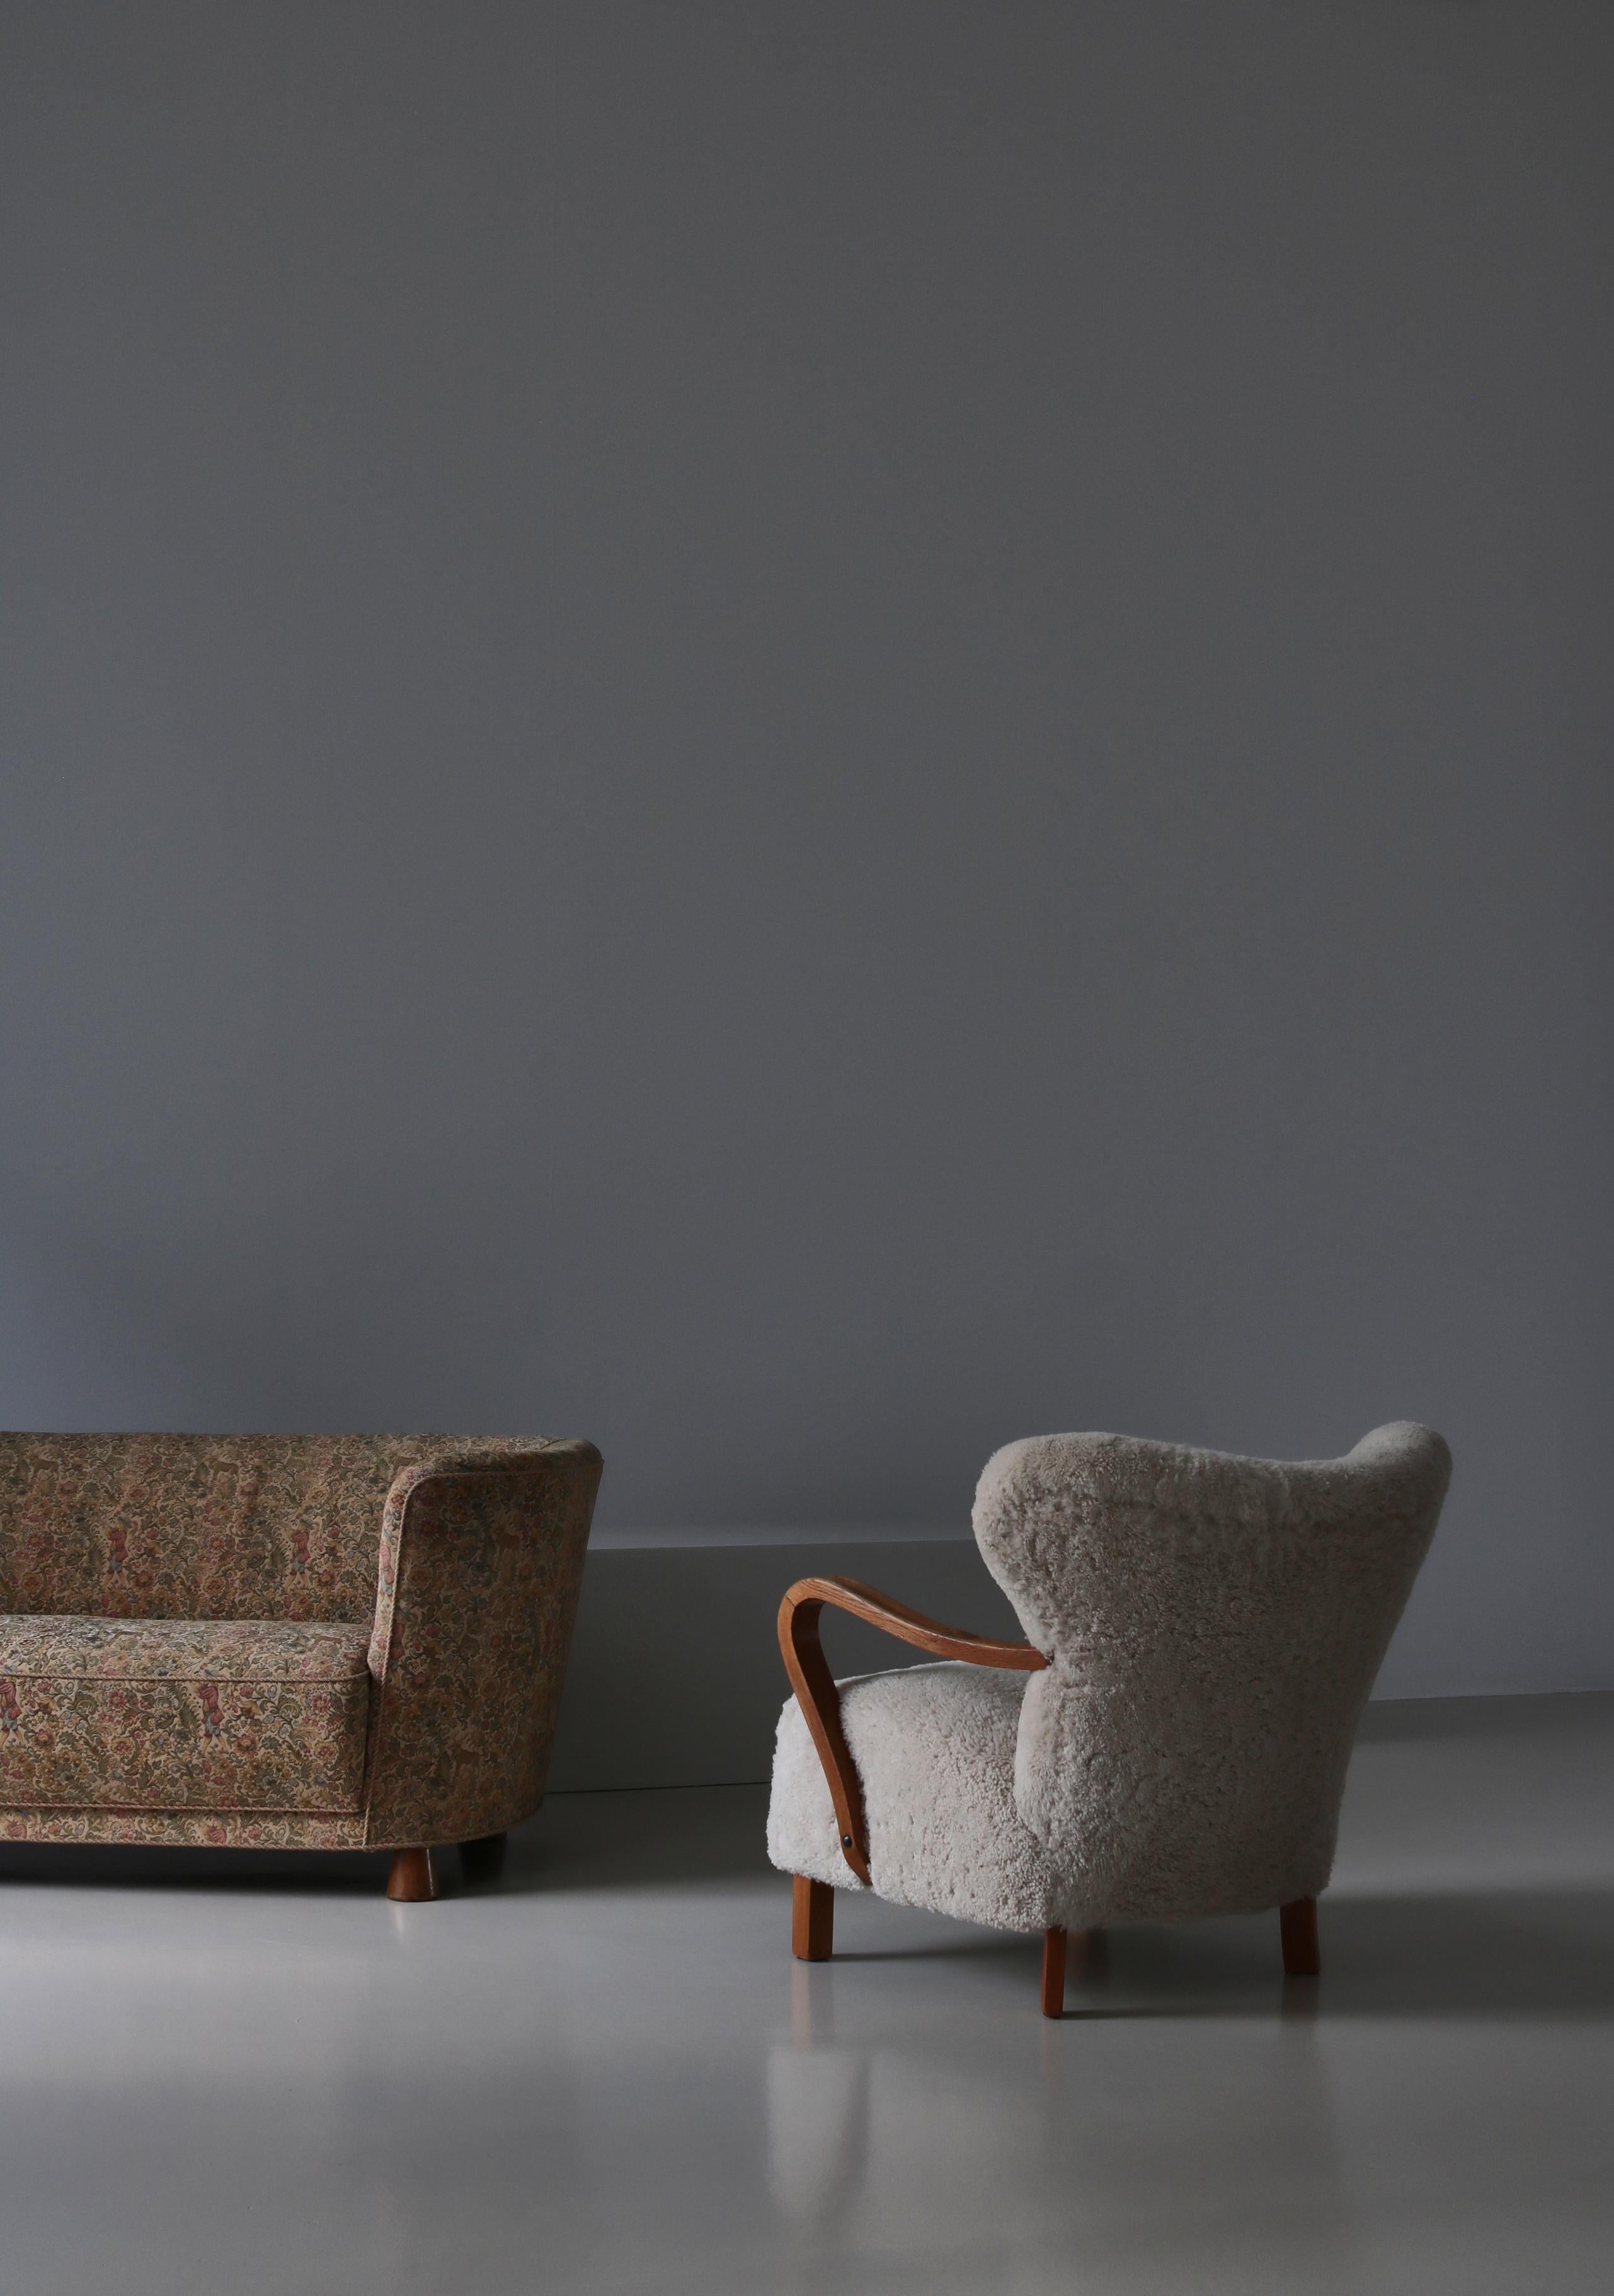 The Modern Scandinavian Lounge Chair, hergestellt in den 1940er Jahren von einem dänischen Tischler. Große dramatische Winkel und Proportionen mit geschnitzten hölzernen Armlehnen und Beine aus massiver Eiche mit großer Maserung und Patina. Die